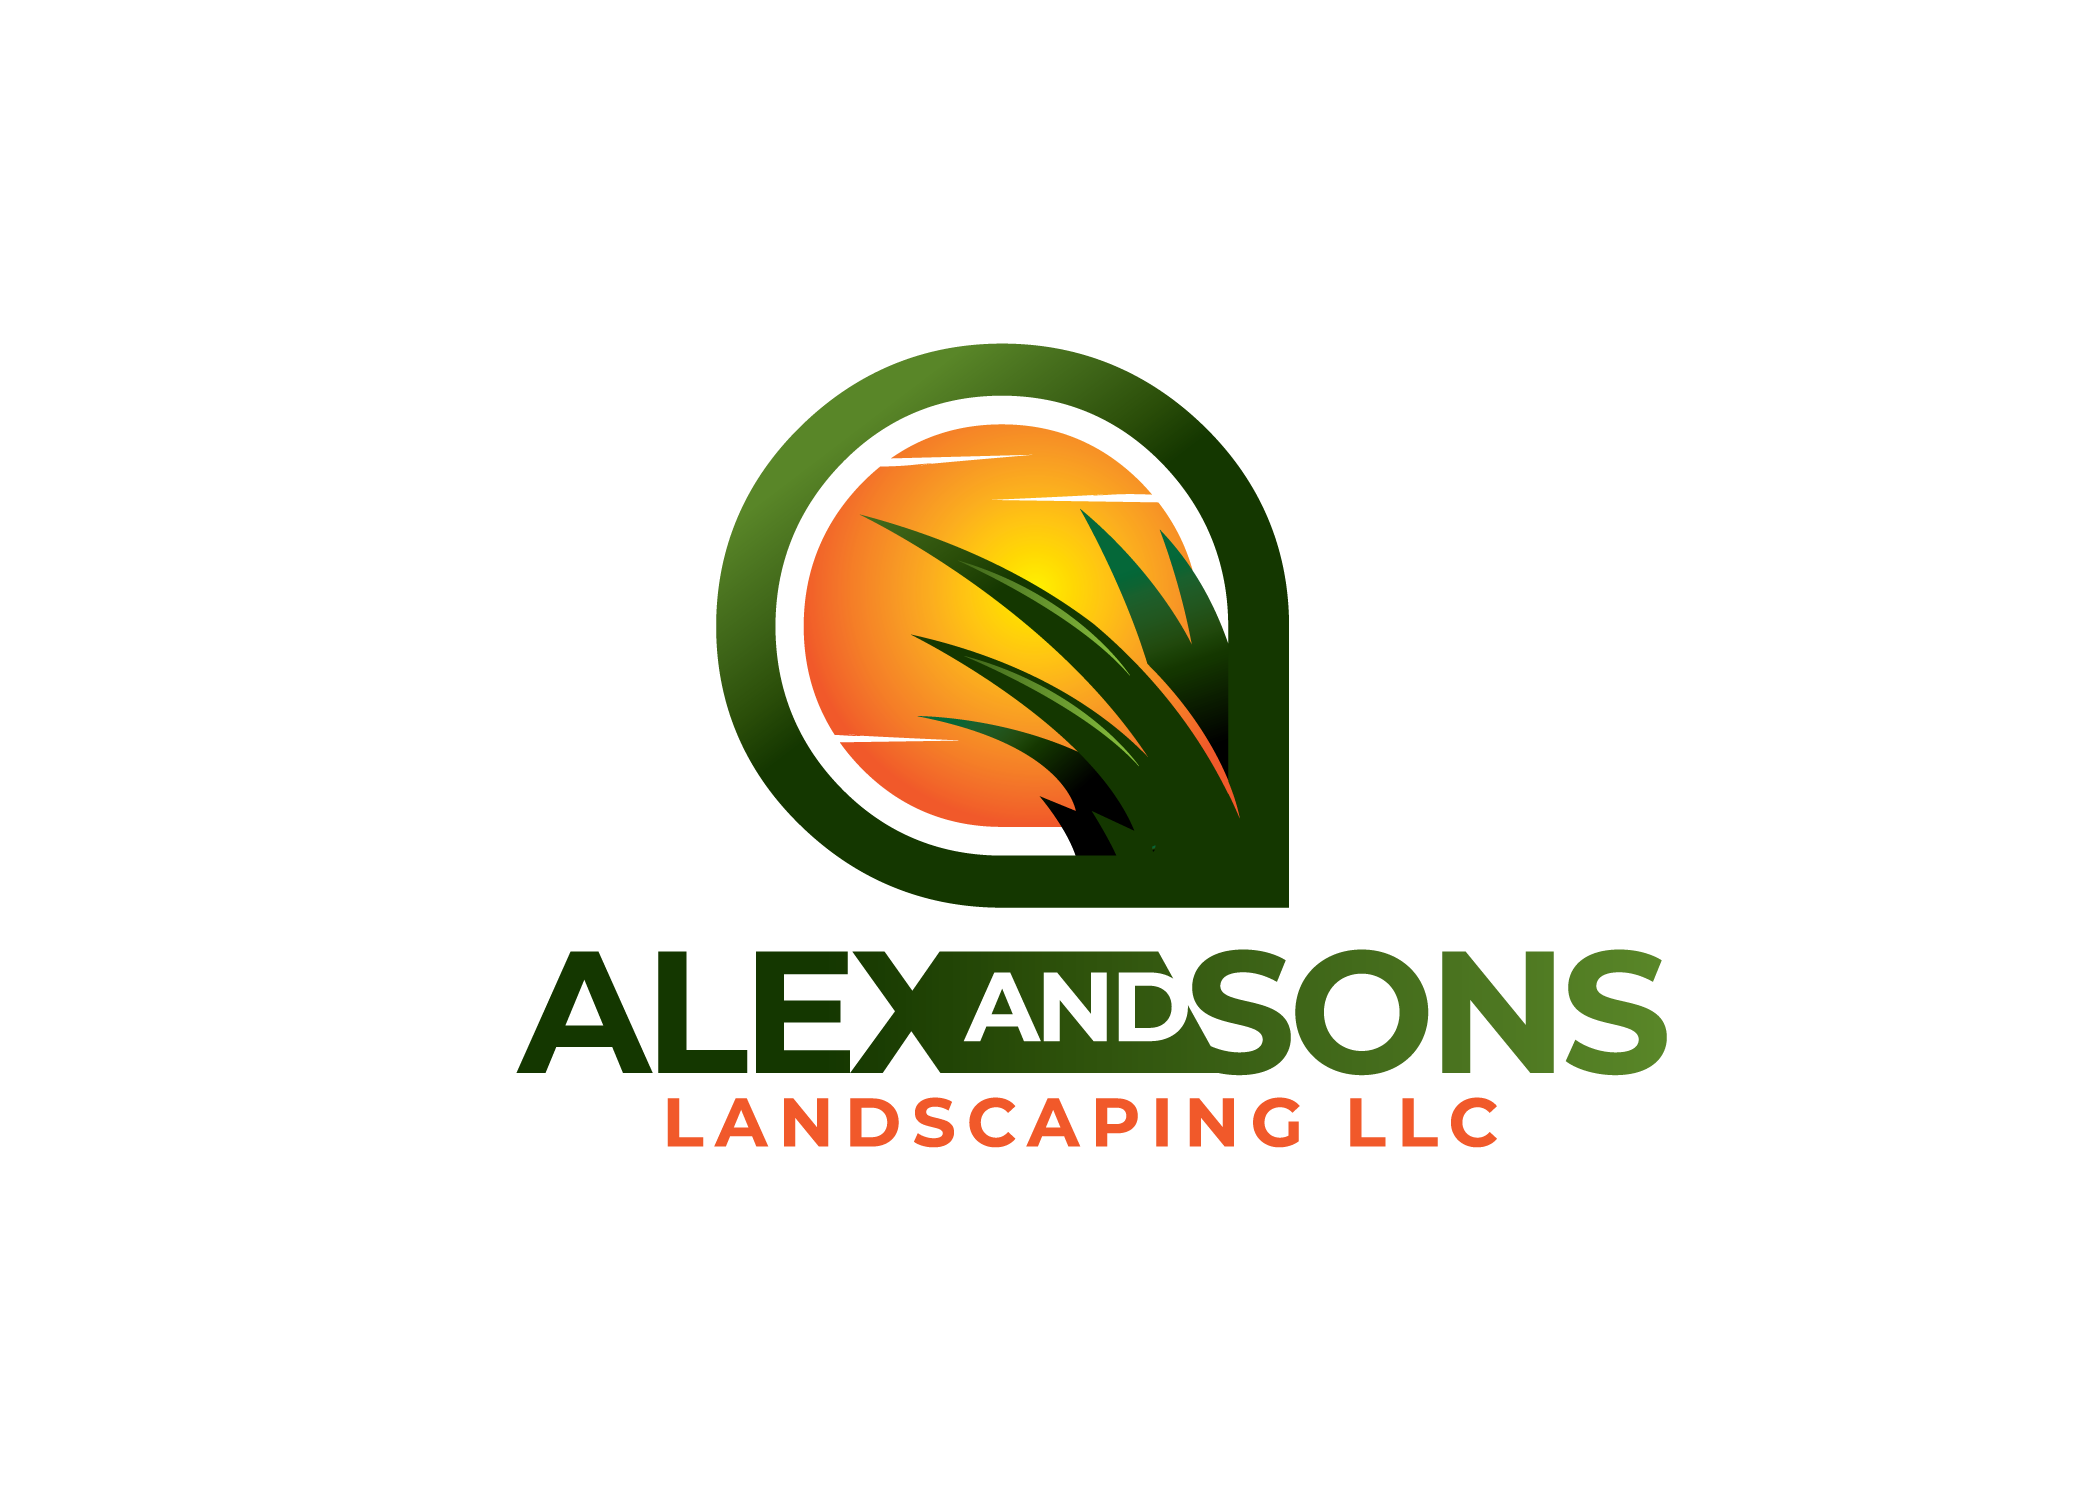 Alex & Sons, LLC Logo